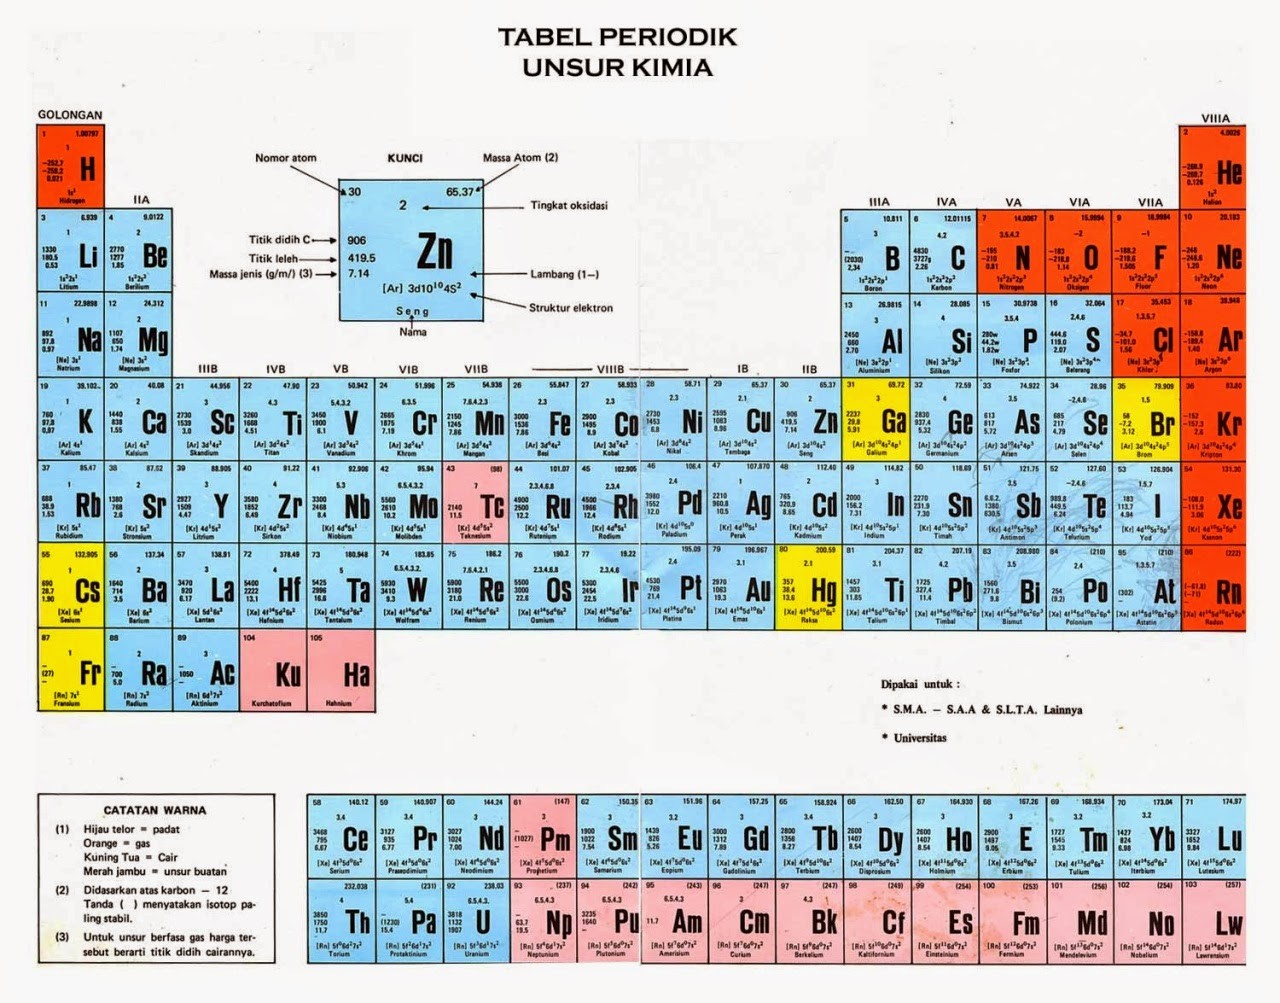 Kelompok unsur berikut yang semuanya bersifat logam yaitu